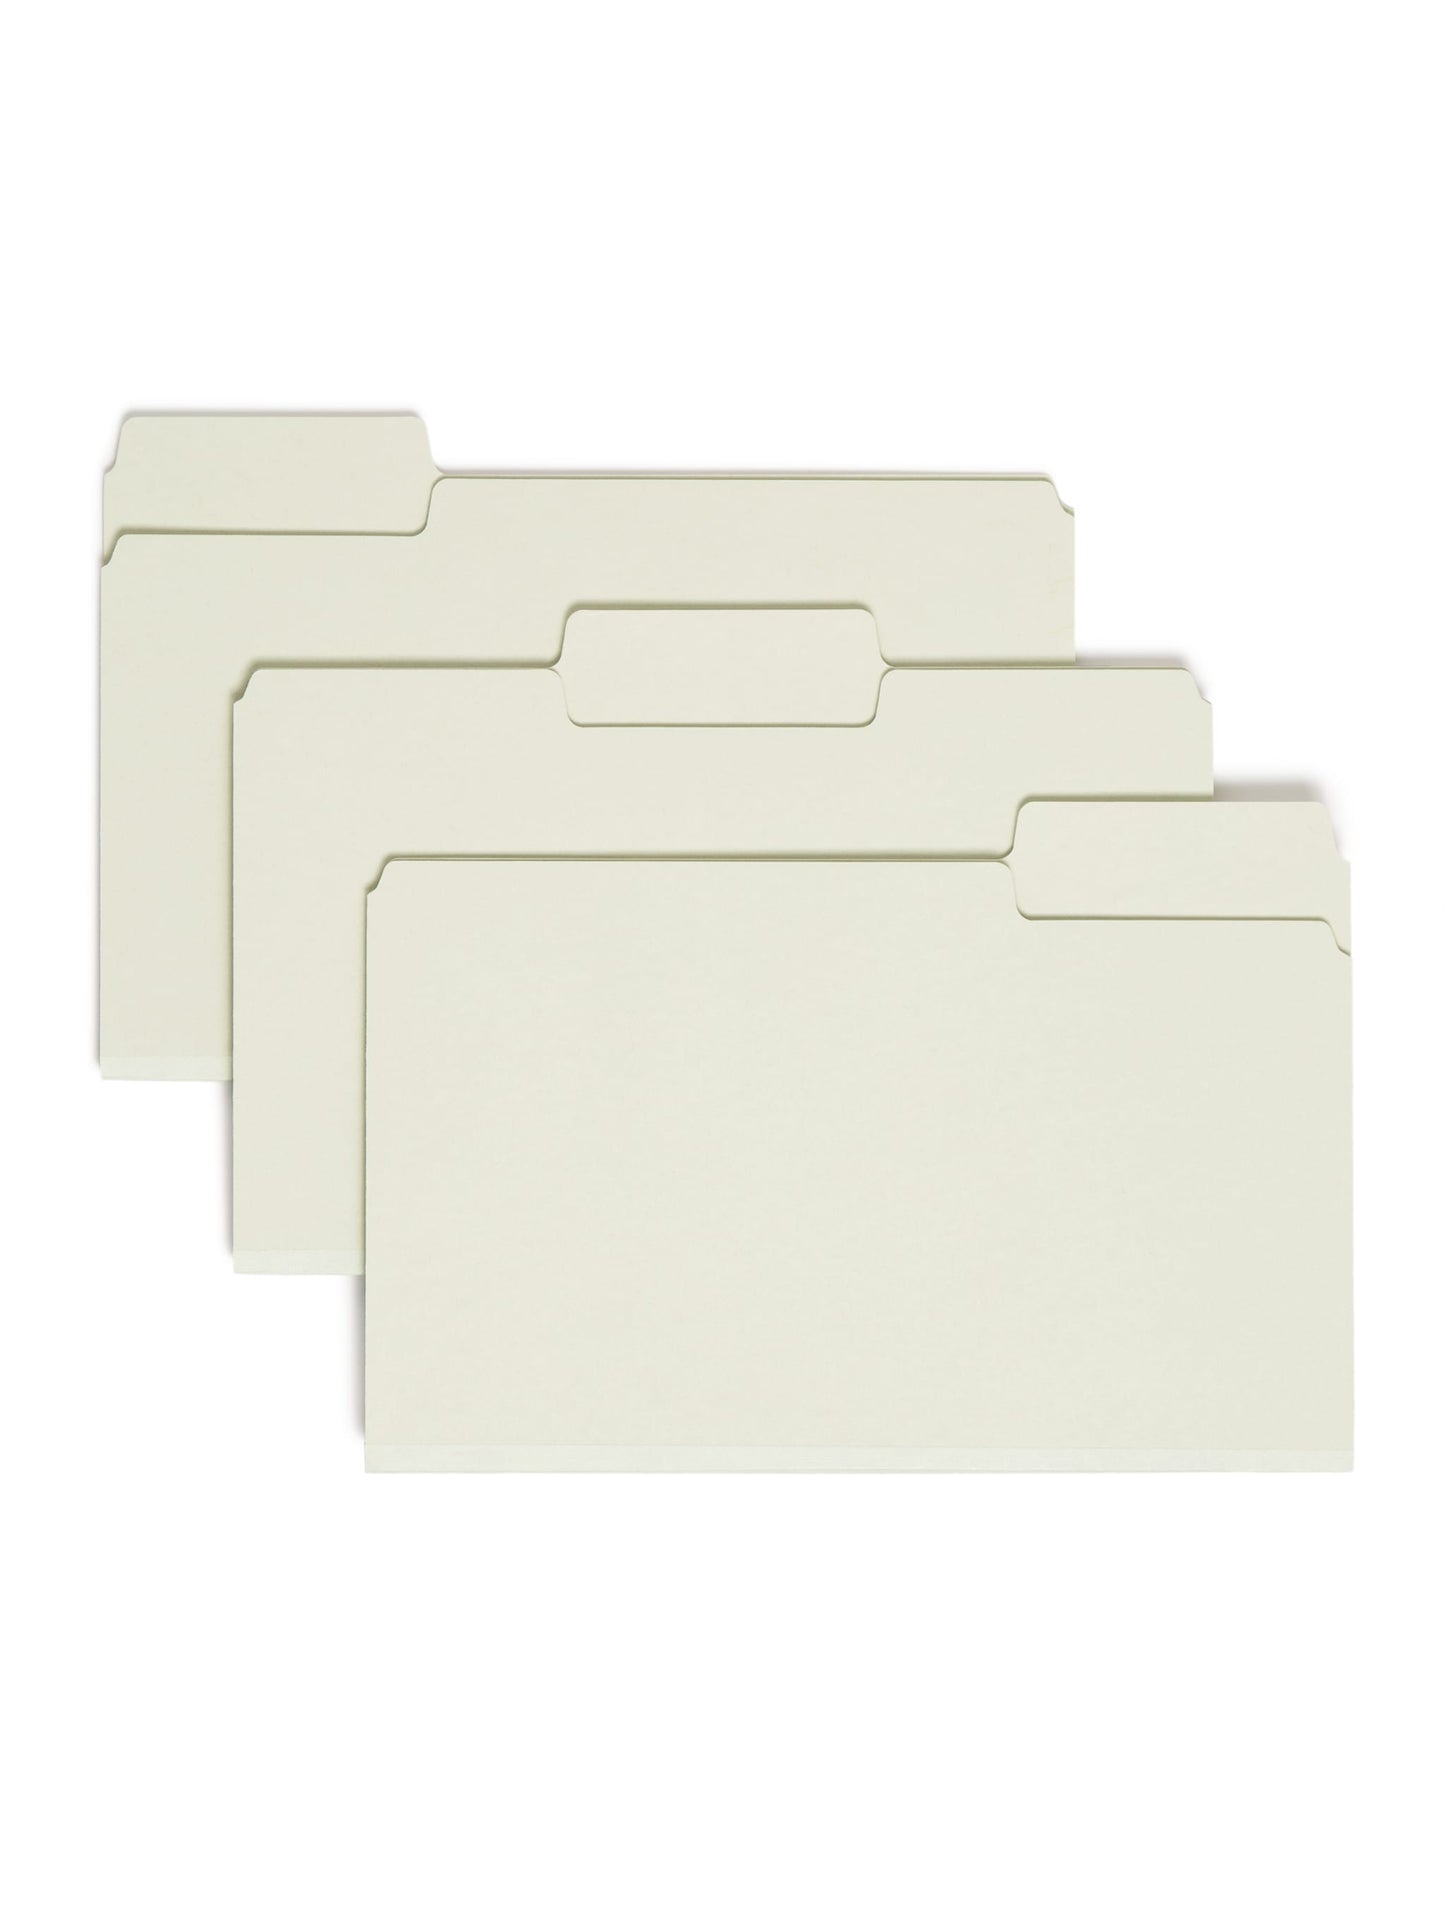 SuperTab® Pressboard Fastener File Folders, Gray/Green Color, Legal Size, Set of 25, 086486199810